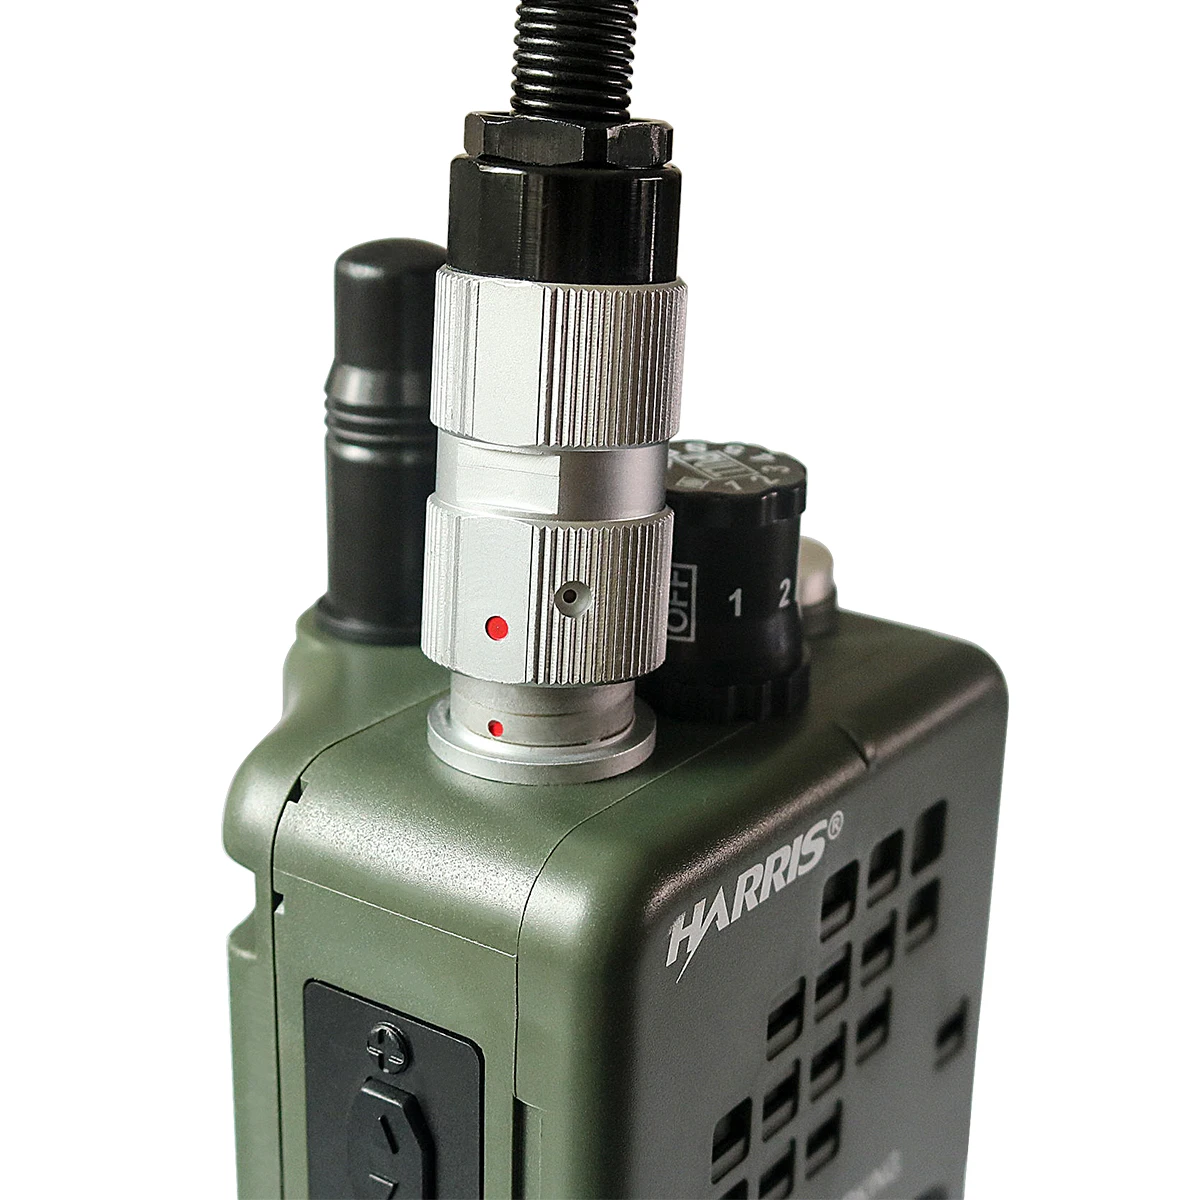 PRC-152 макет радиоприемника случае, военная рация-Walkie модель для Baofeng Радио, без функции